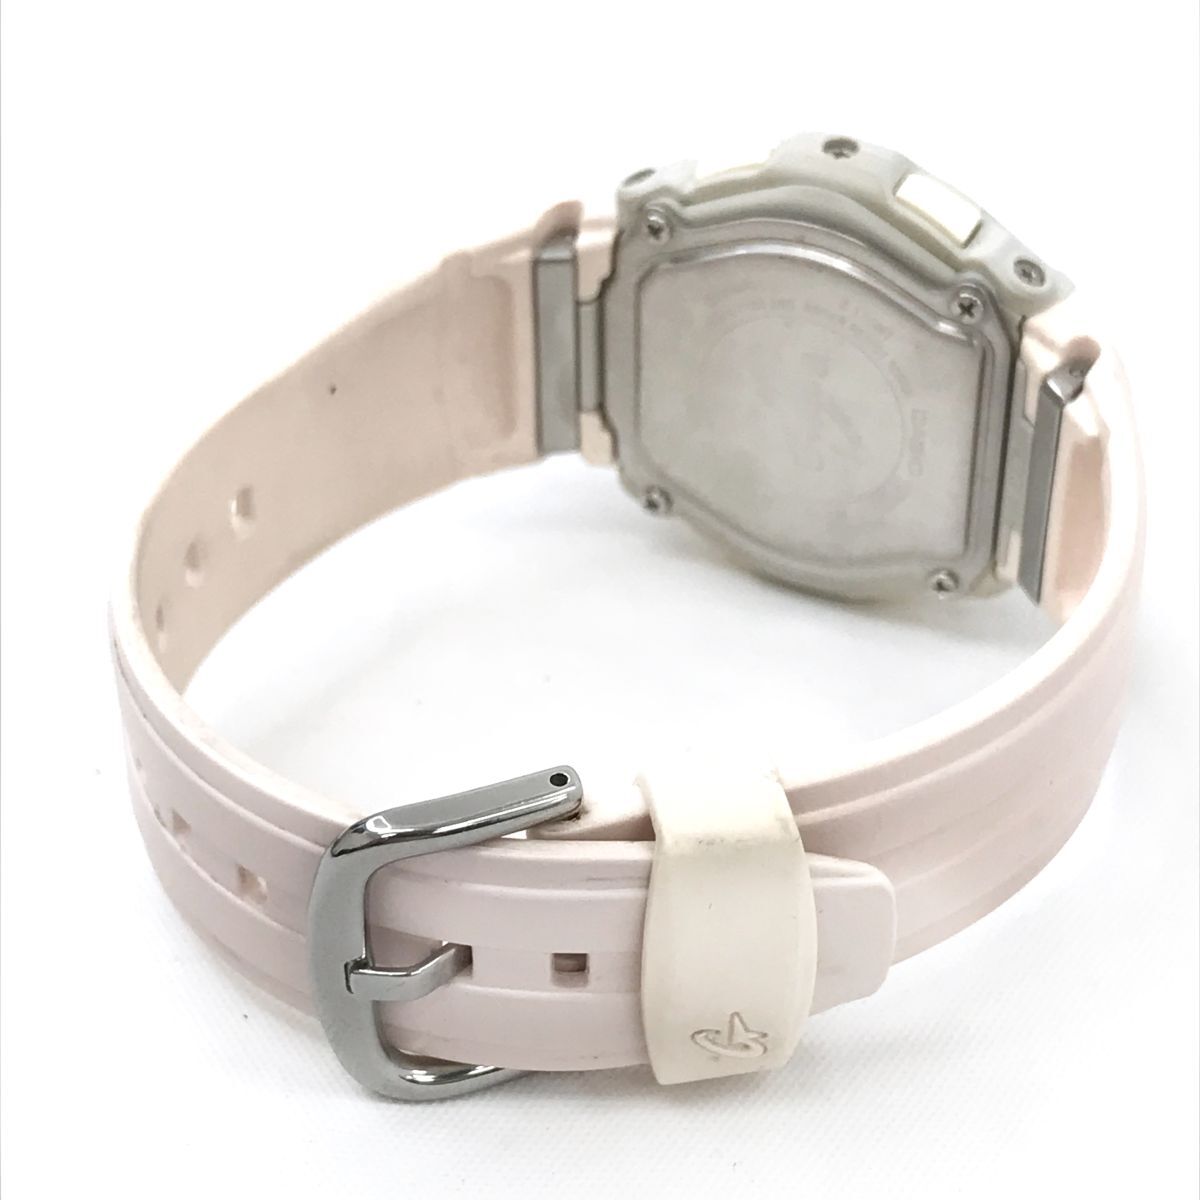  прекрасный товар CASIO Casio BABY-G baby G наручные часы BG-73 кварц дыра teji раунд симпатичный модный розовый календарь батарейка заменен рабочее состояние подтверждено 